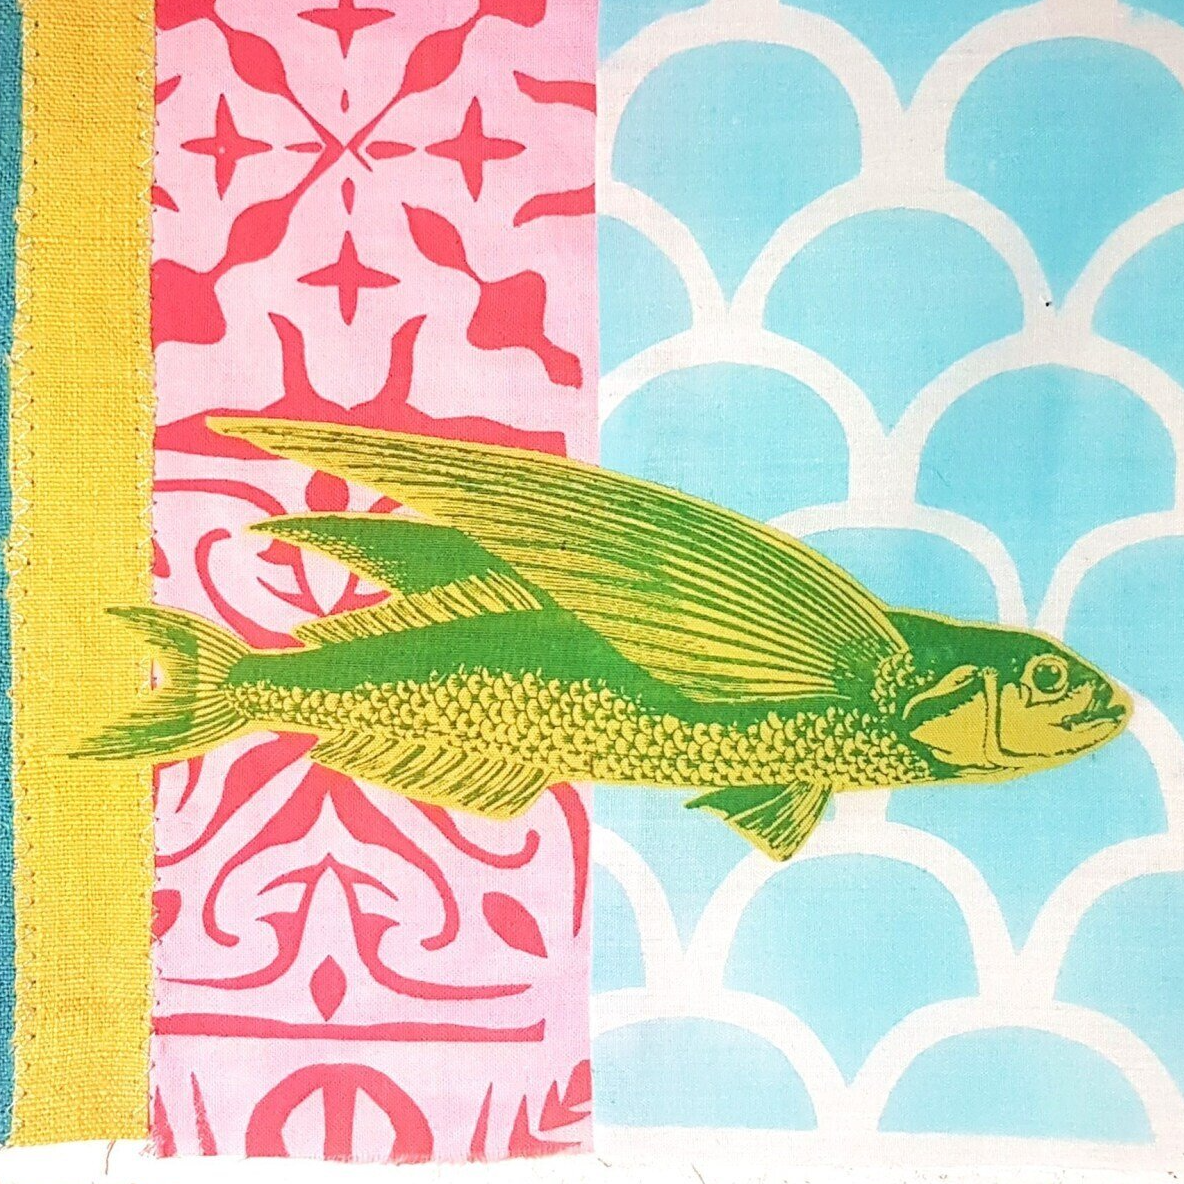 fliegender Fisch als Siebdruck auf Muster Schablonendruck